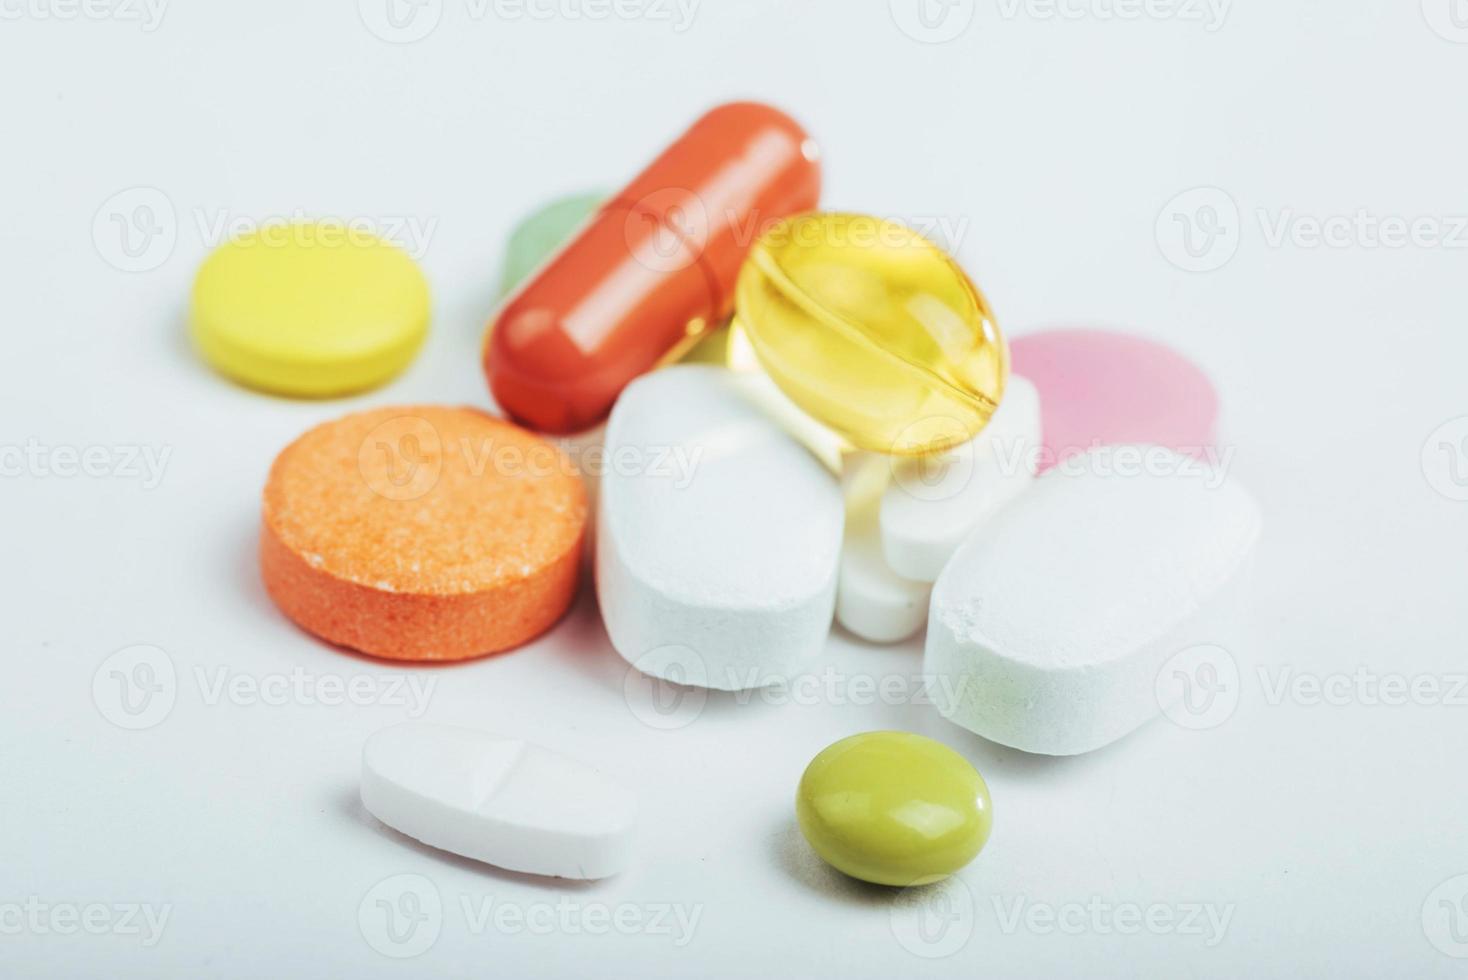 medicinska färgglada piller, kapslar eller kosttillskott för behandling och hälsovård på en ljus bakgrund foto